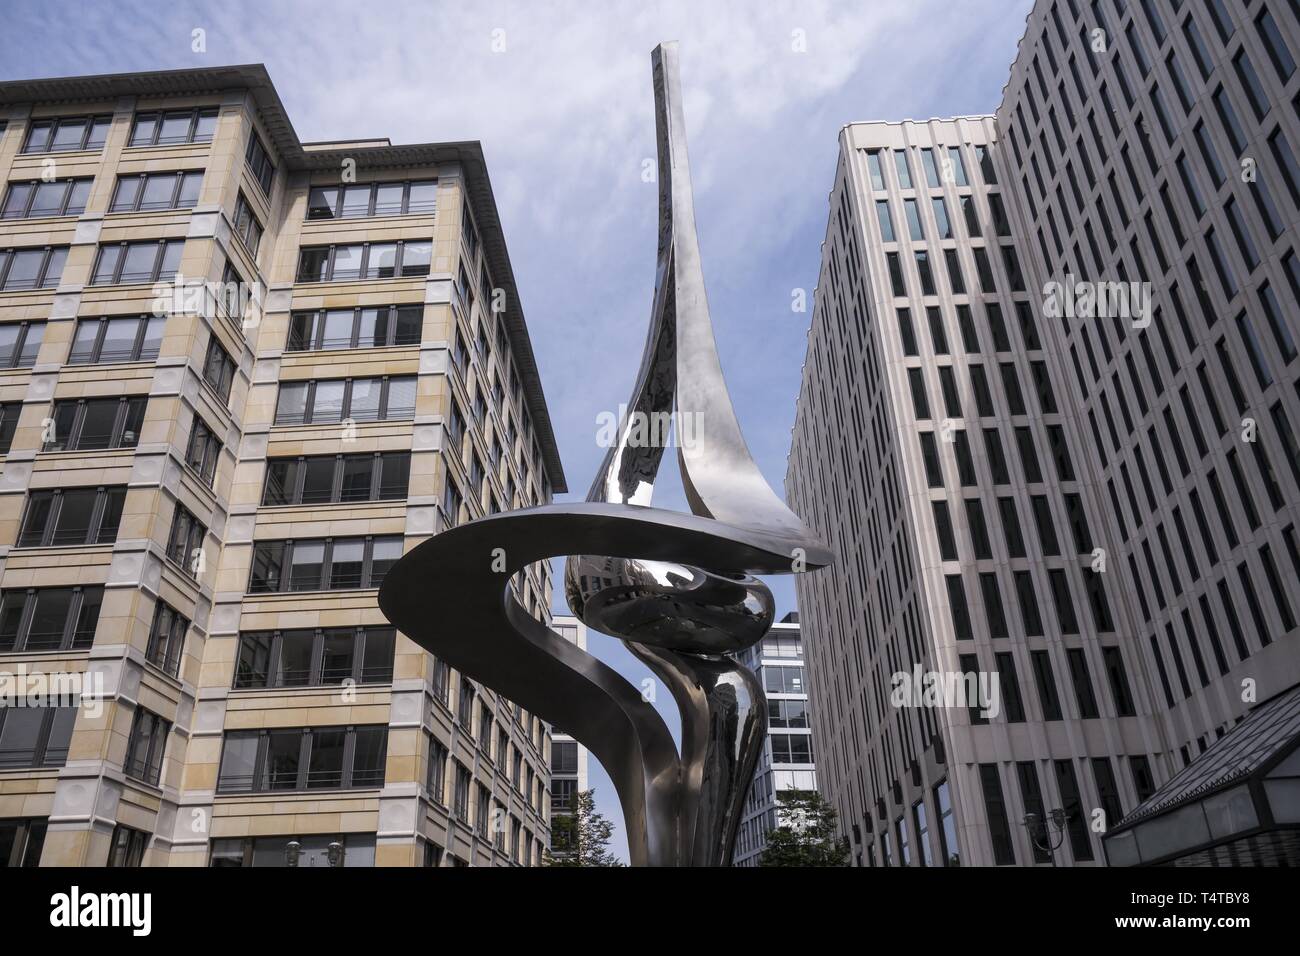 Inge-Beisheim-Platz, la sculpture "Phoenix", Potsdamer Platz, Berlin, Germany, Europe Banque D'Images